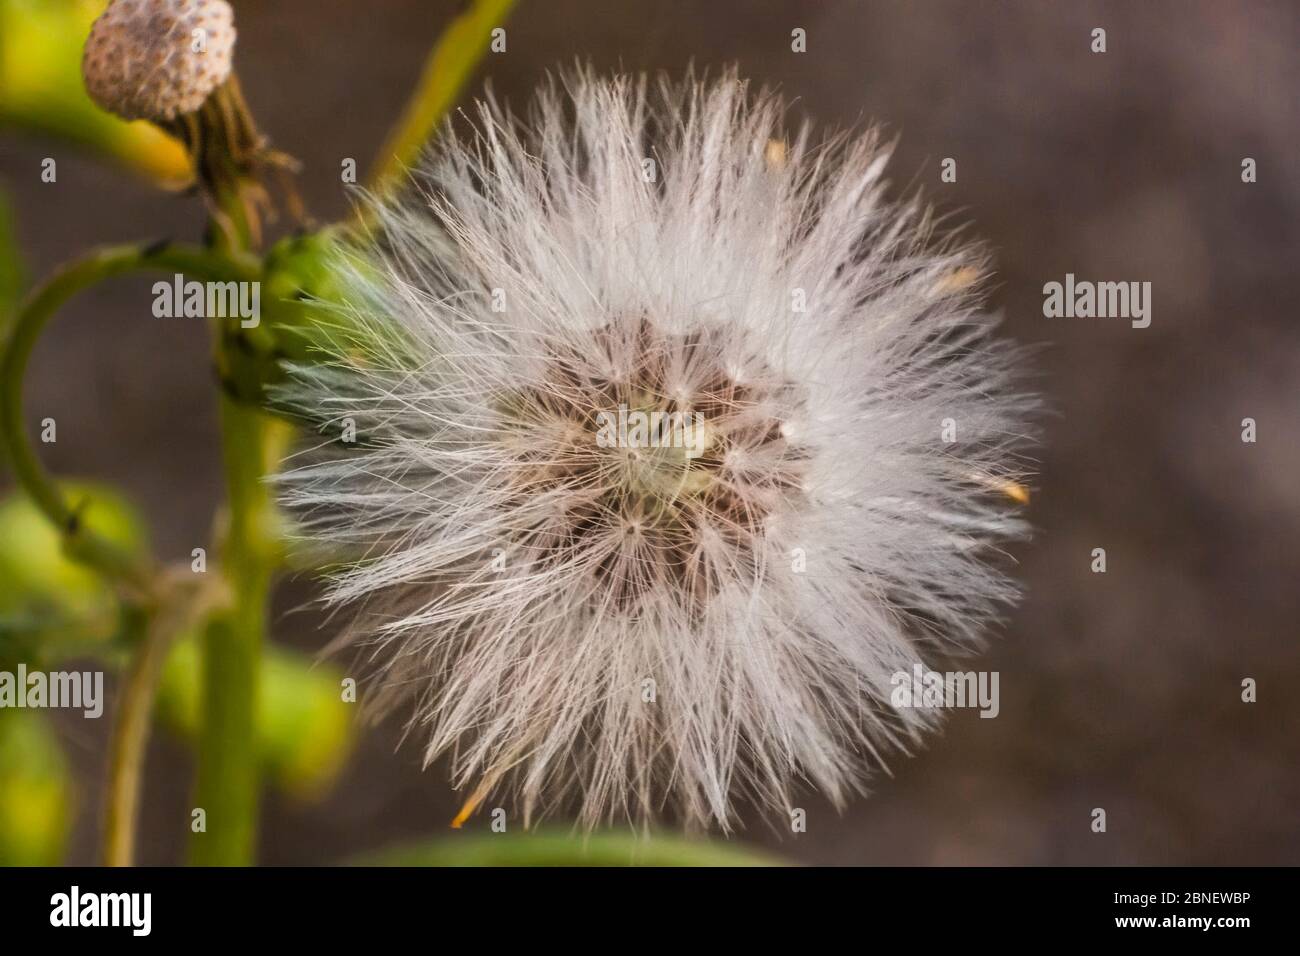 Ingrandimento di un fiore di Taraxacum nella sua fase di infruttescenza. Foto Stock